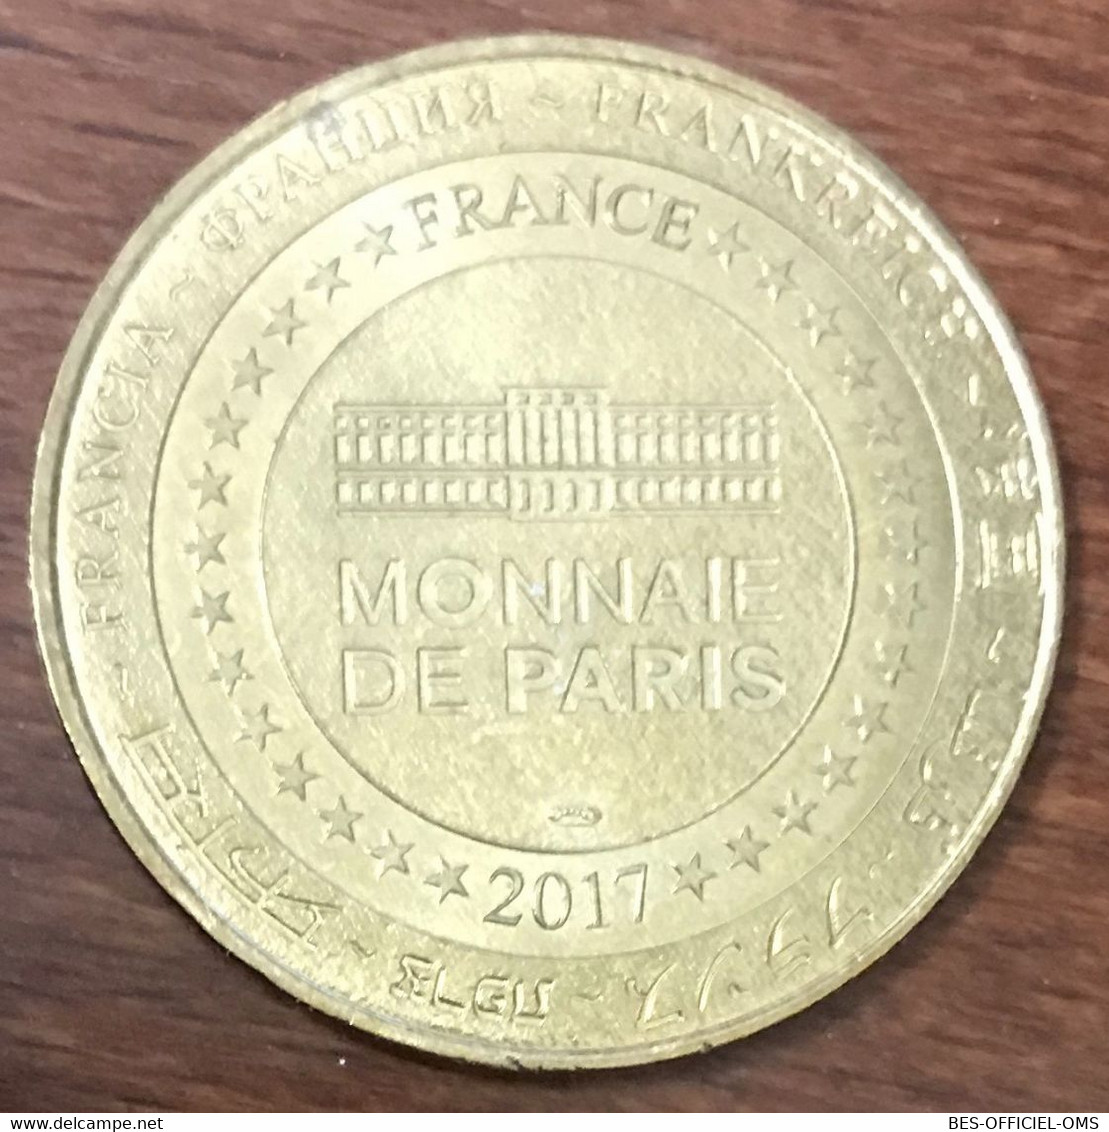 30 NÎMES LES ARÈNES N°2 MDP 2017 MEDAILLE SOUVENIR MONNAIE DE PARIS JETON TOURISTIQUE MEDALS COINS TOKENS - 2017